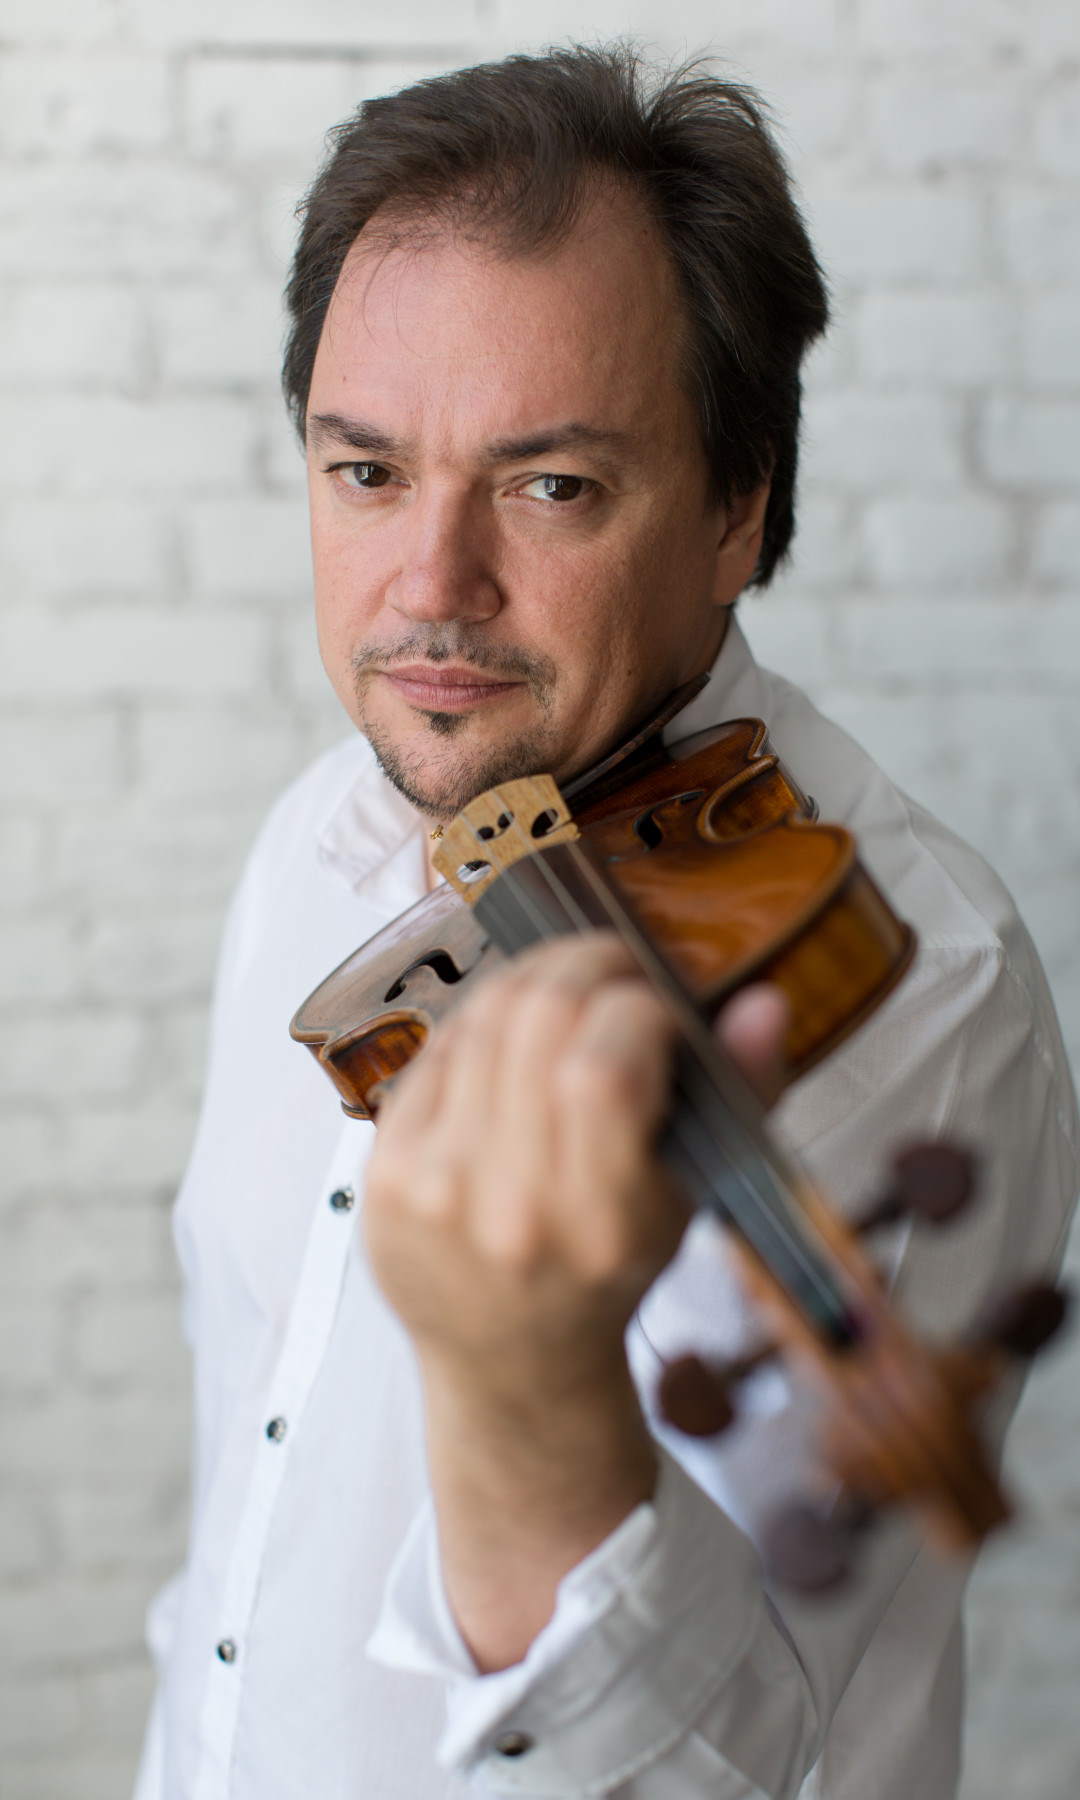 Concorso Violinistico Internazionale “Andrea Postacchini”, serata conclusiva